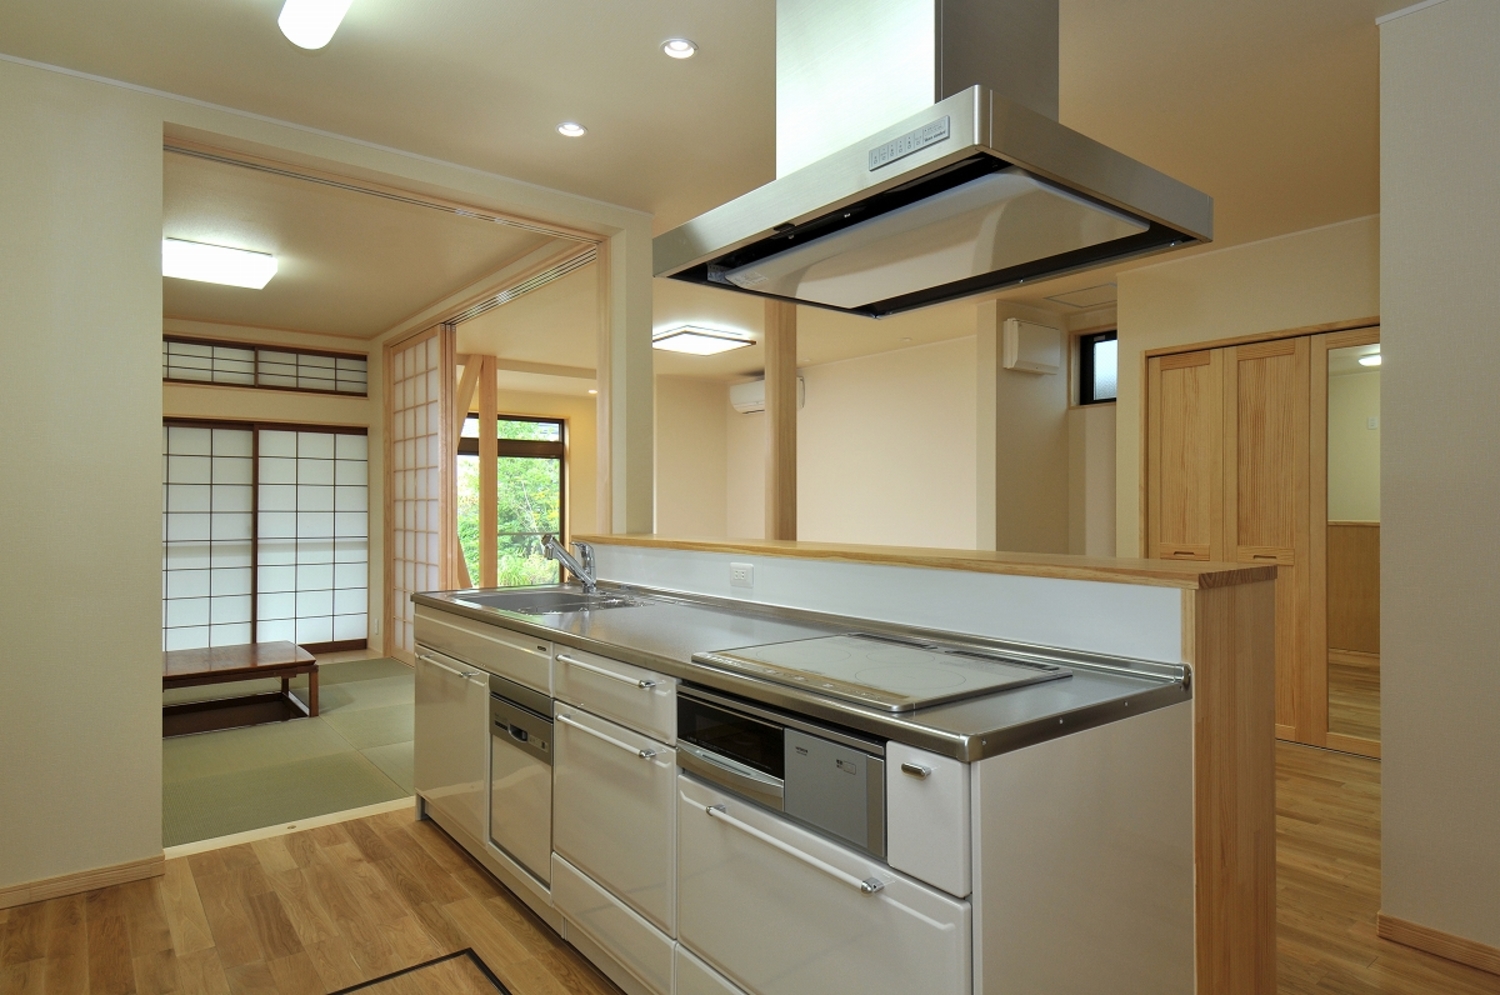 シンプルなデザインのキッチンがある画像